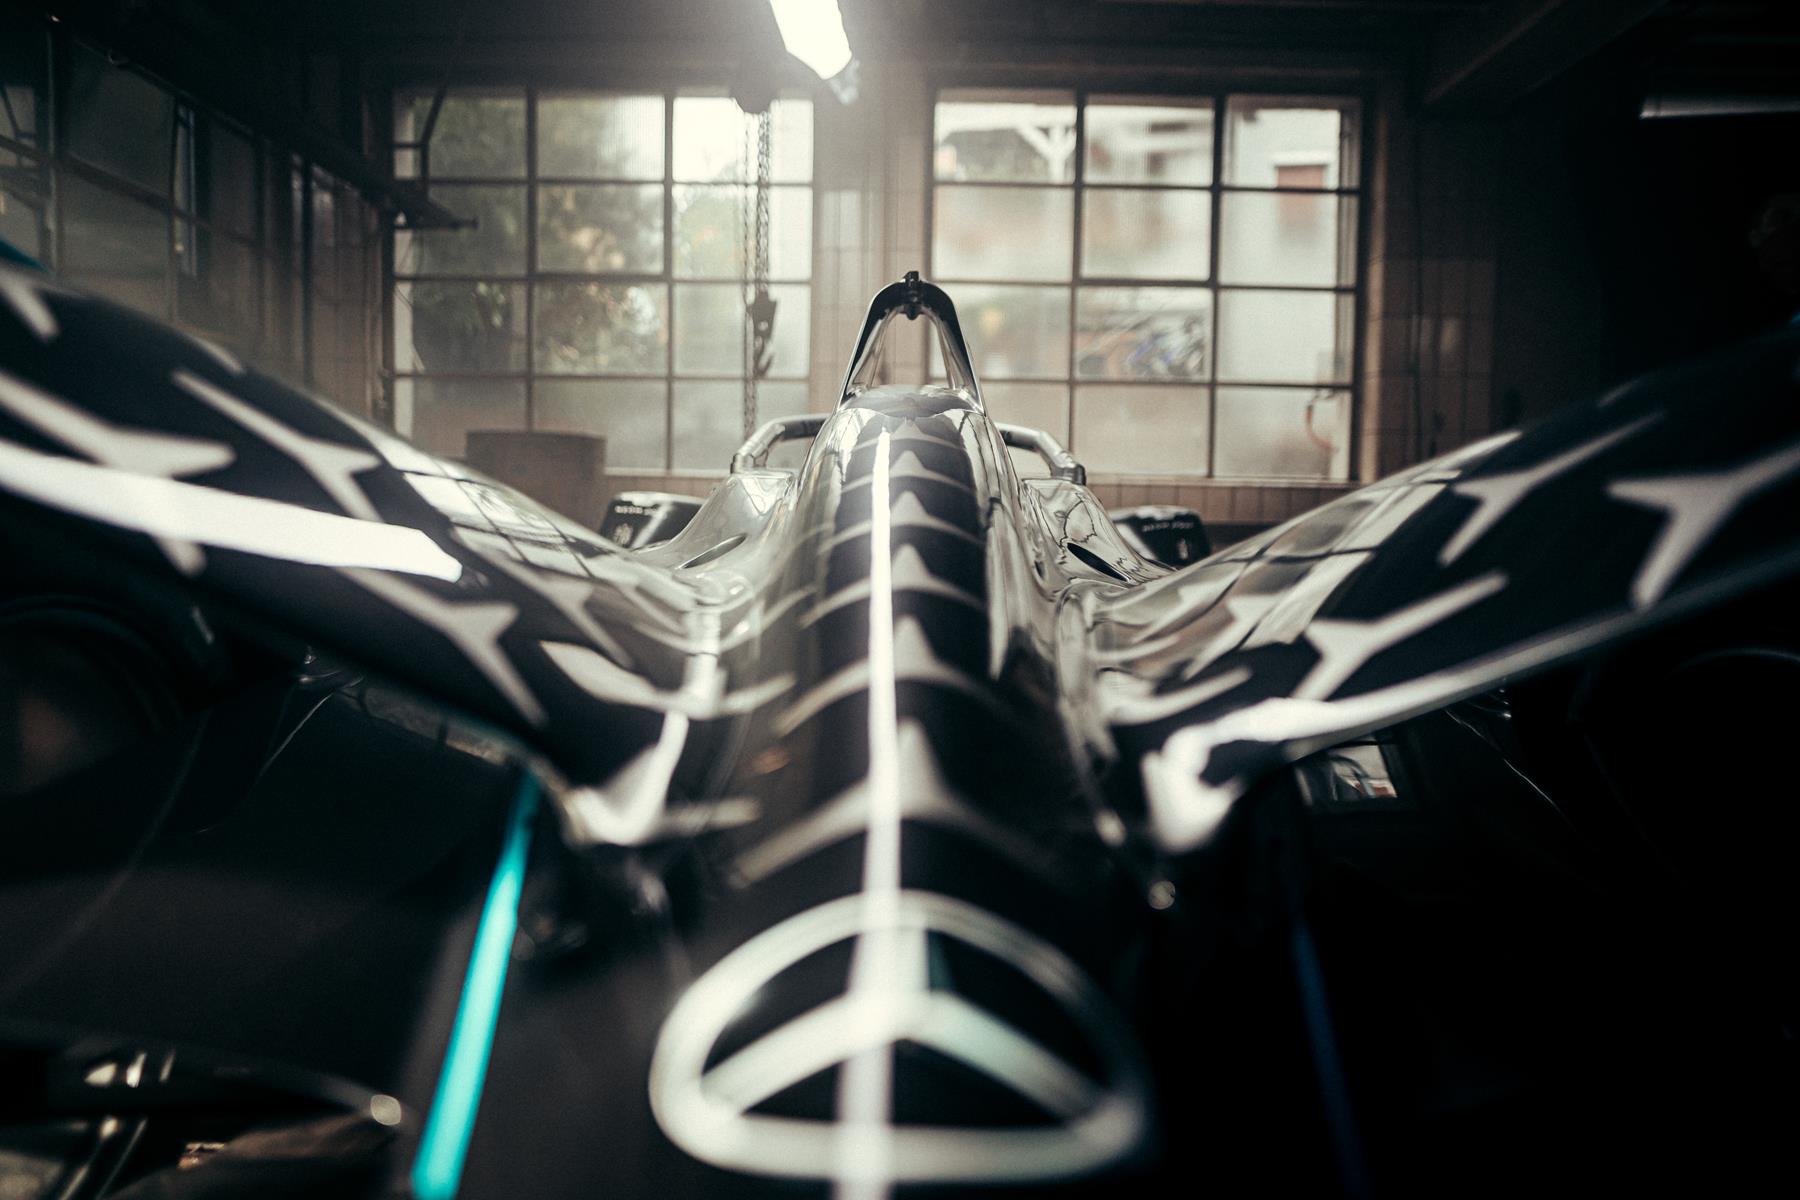 Mercedes Benz EQ Formula E neue Ära Team stricken Mütze Hut 